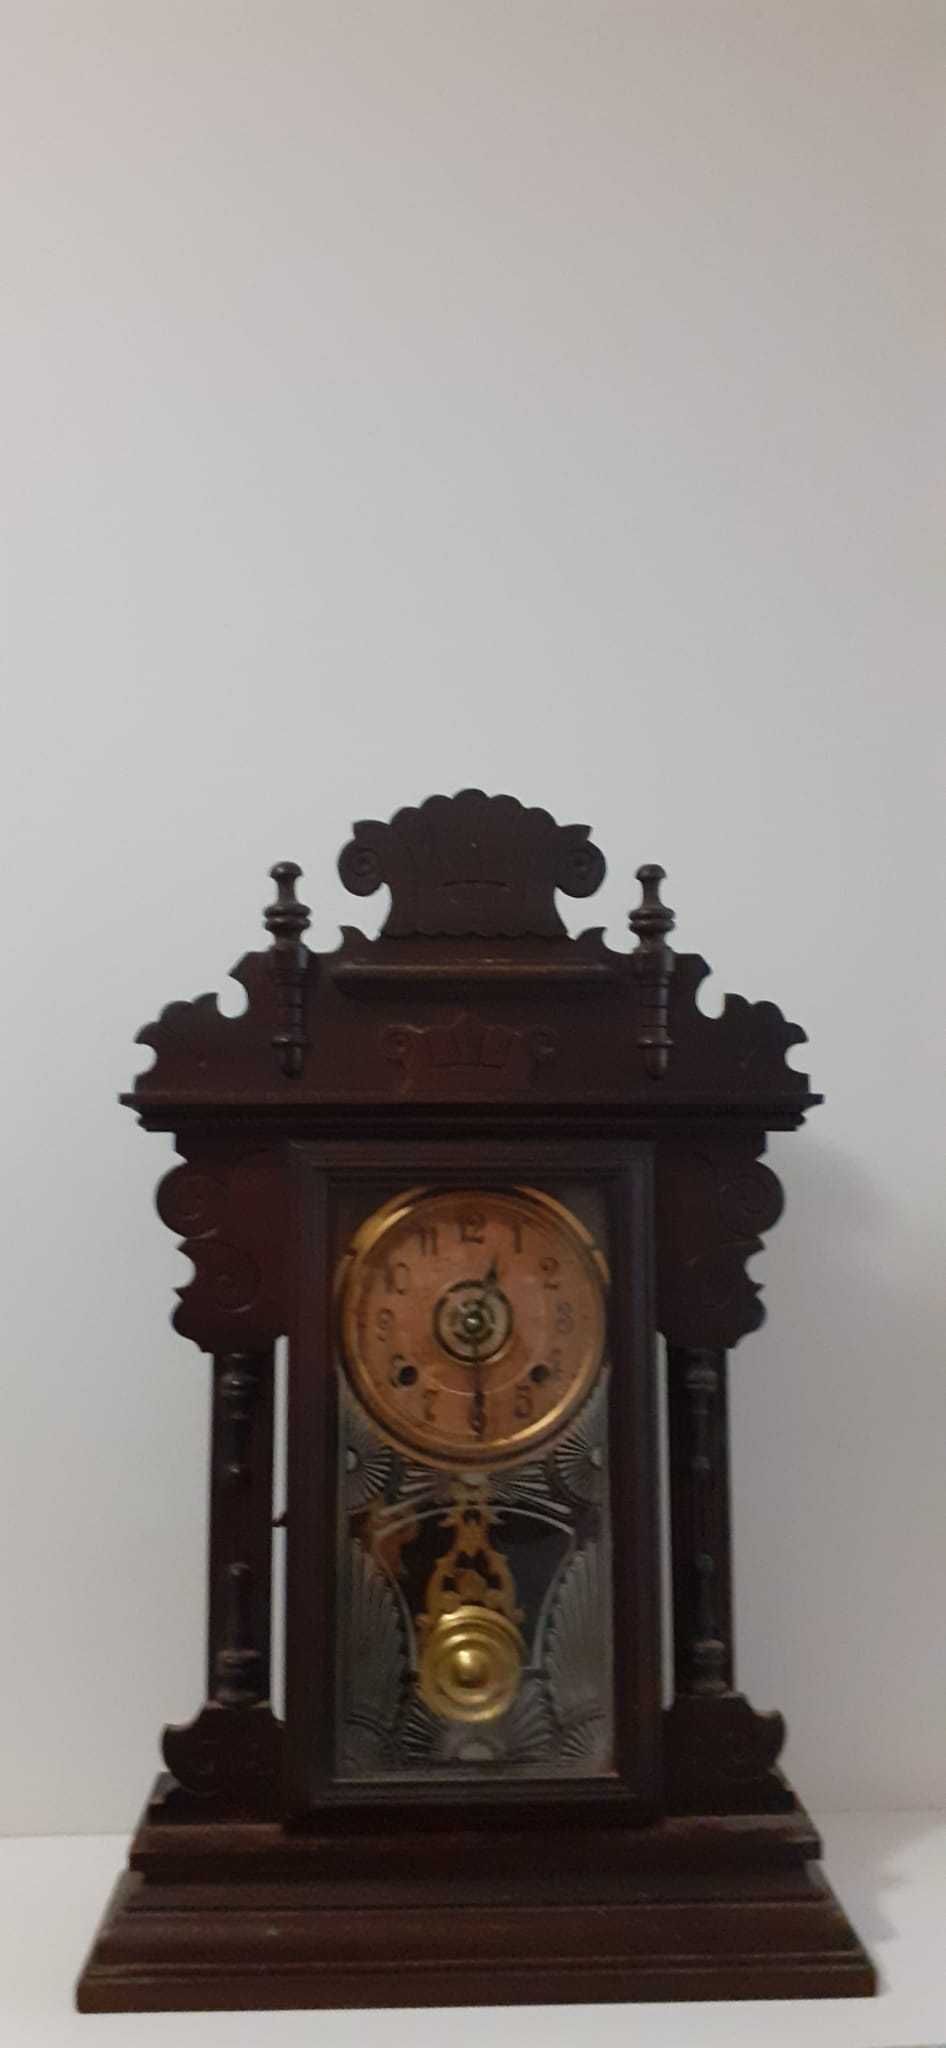 Relógio  Vintage da marca "a boa reguladora"